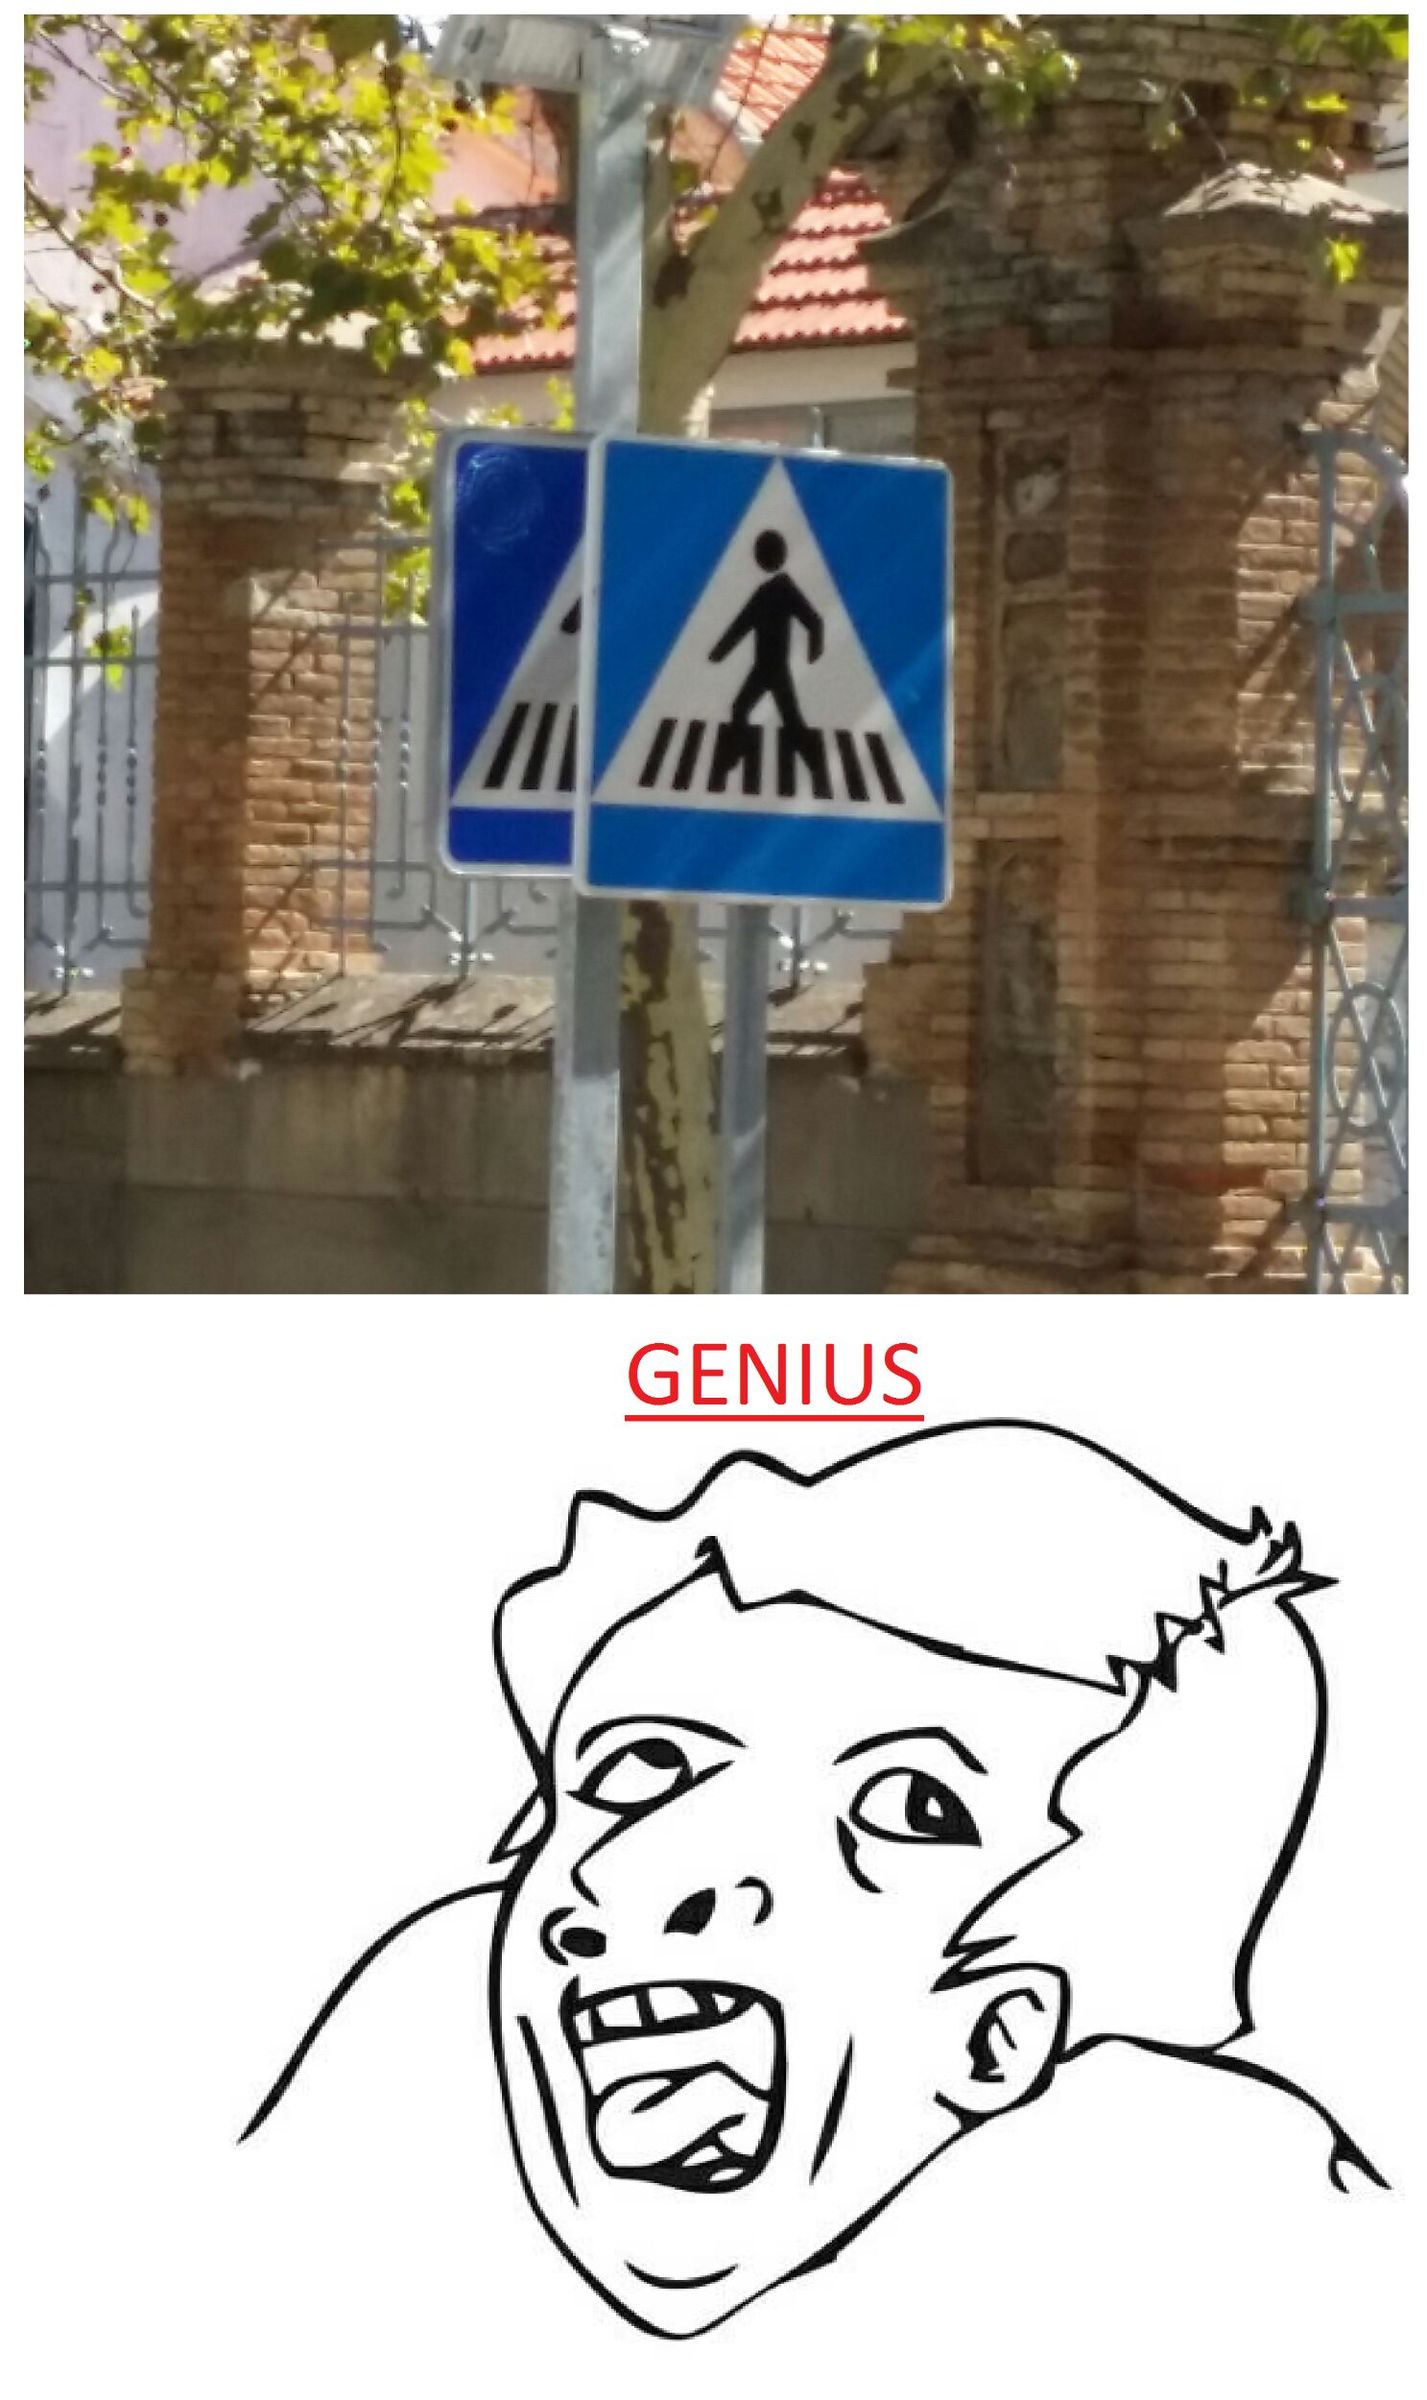 Genius 2000 - meme